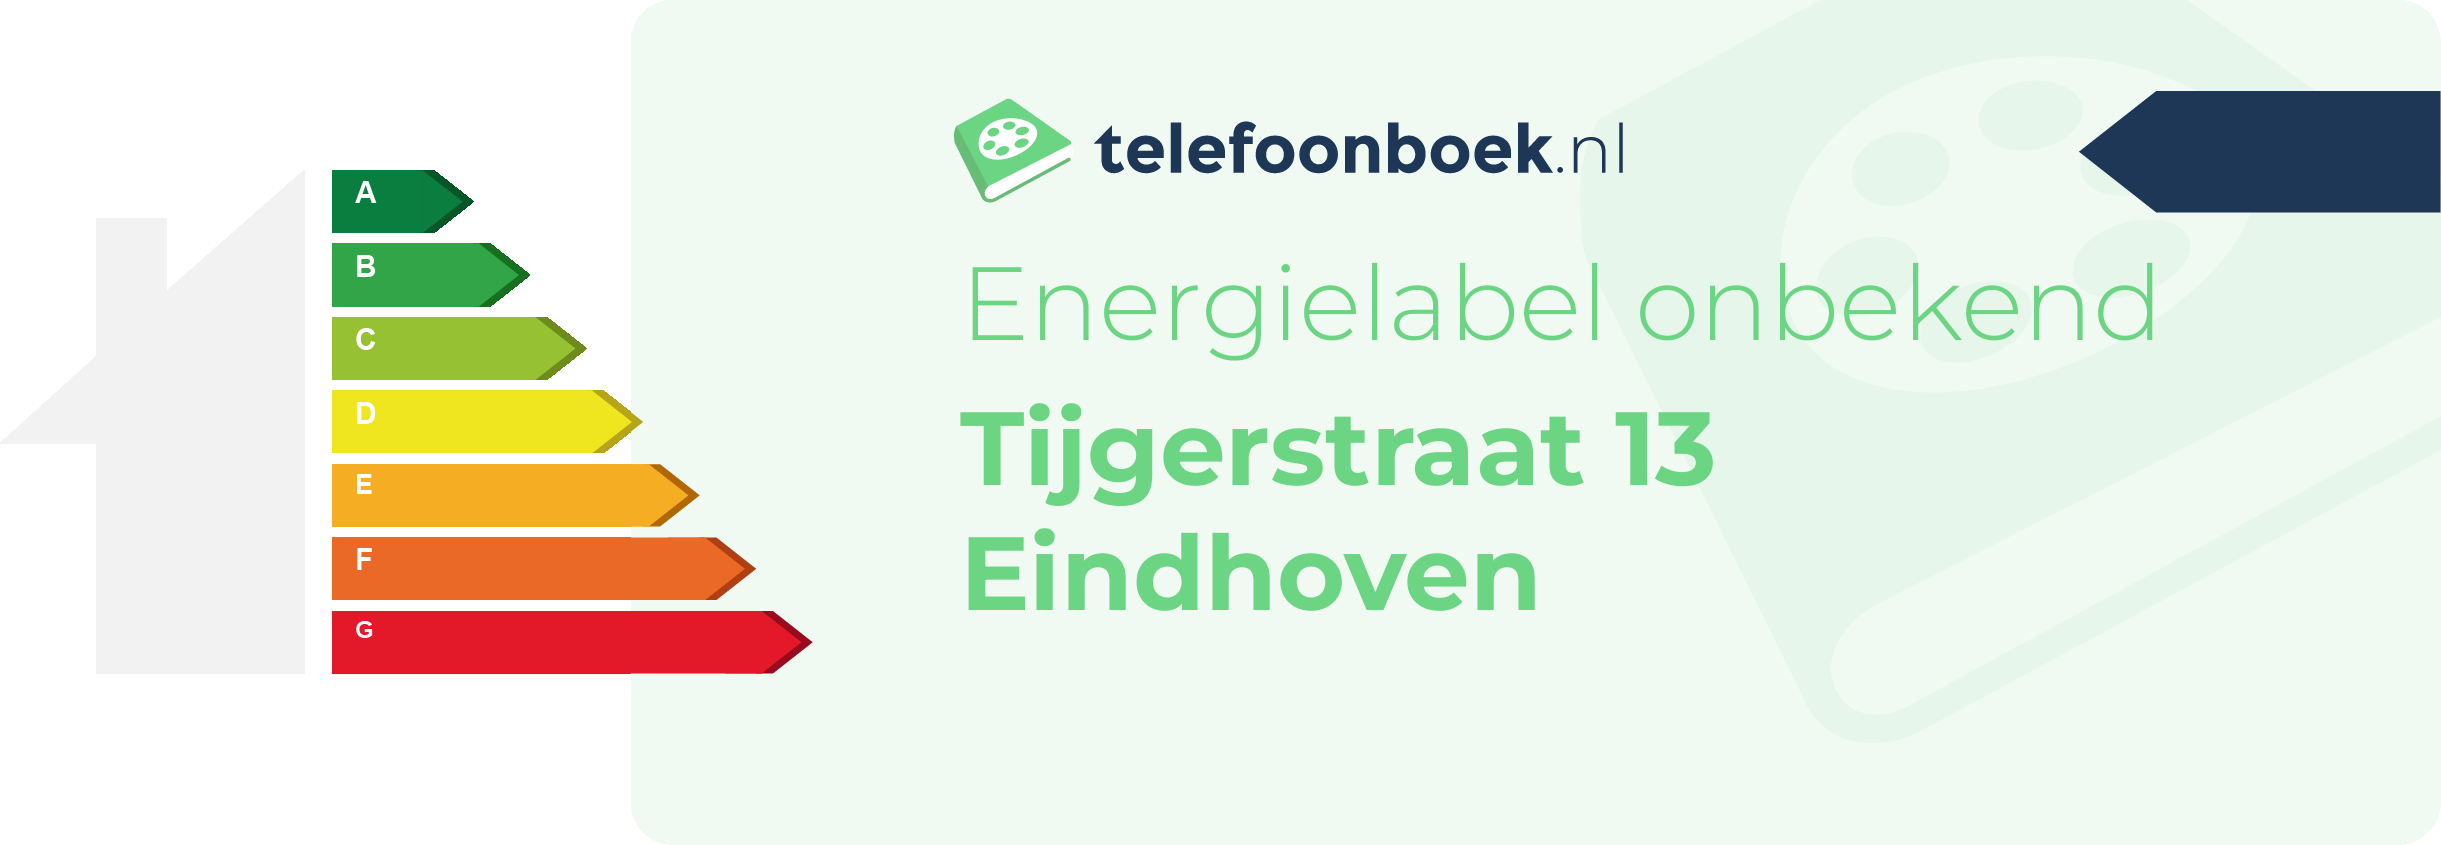 Energielabel Tijgerstraat 13 Eindhoven